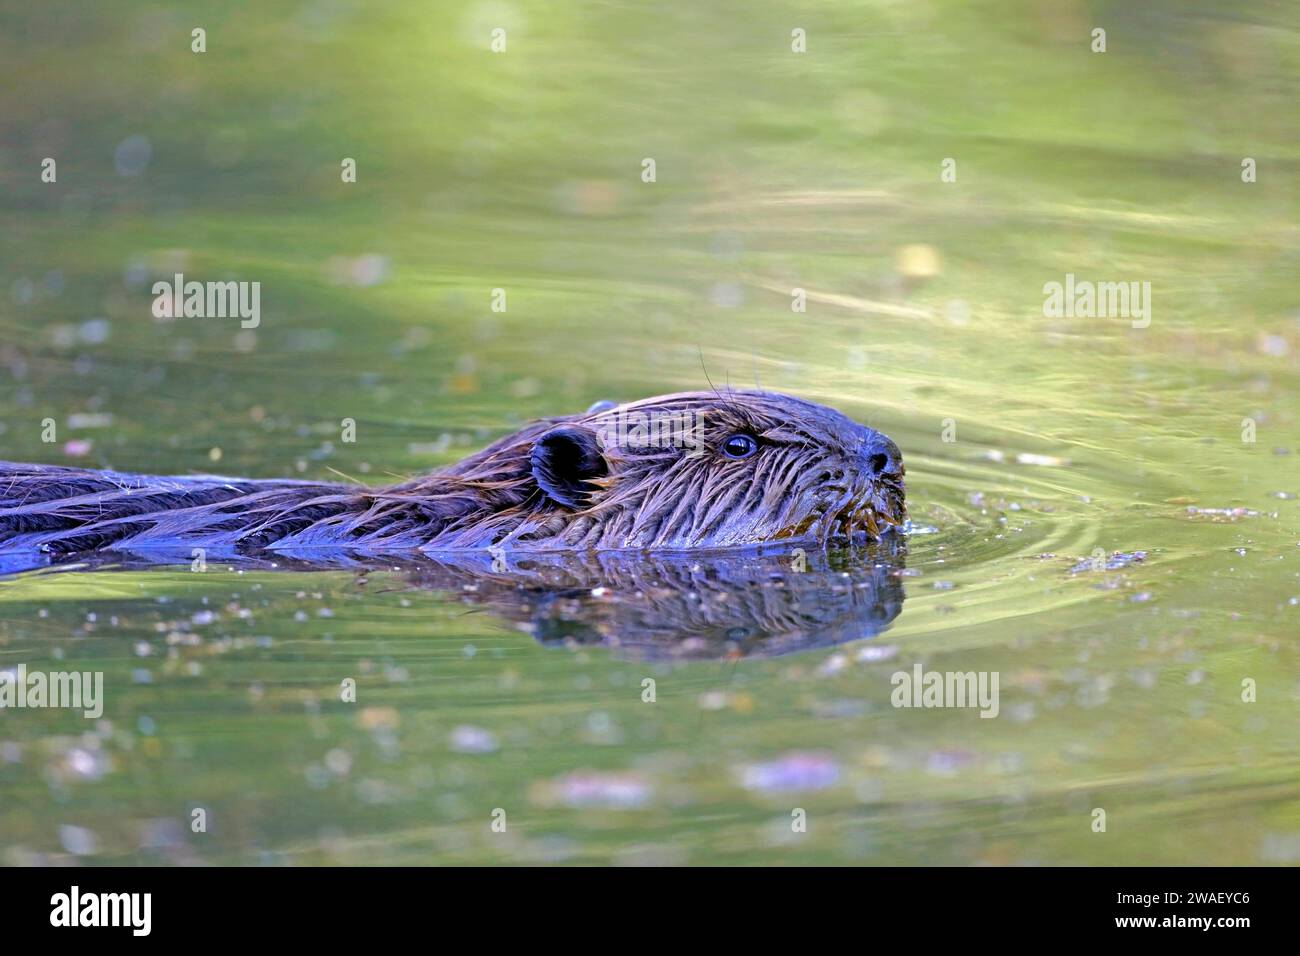 Wild Beaver che nuota in un laghetto, ritratto, che sembra attento. Foto Stock